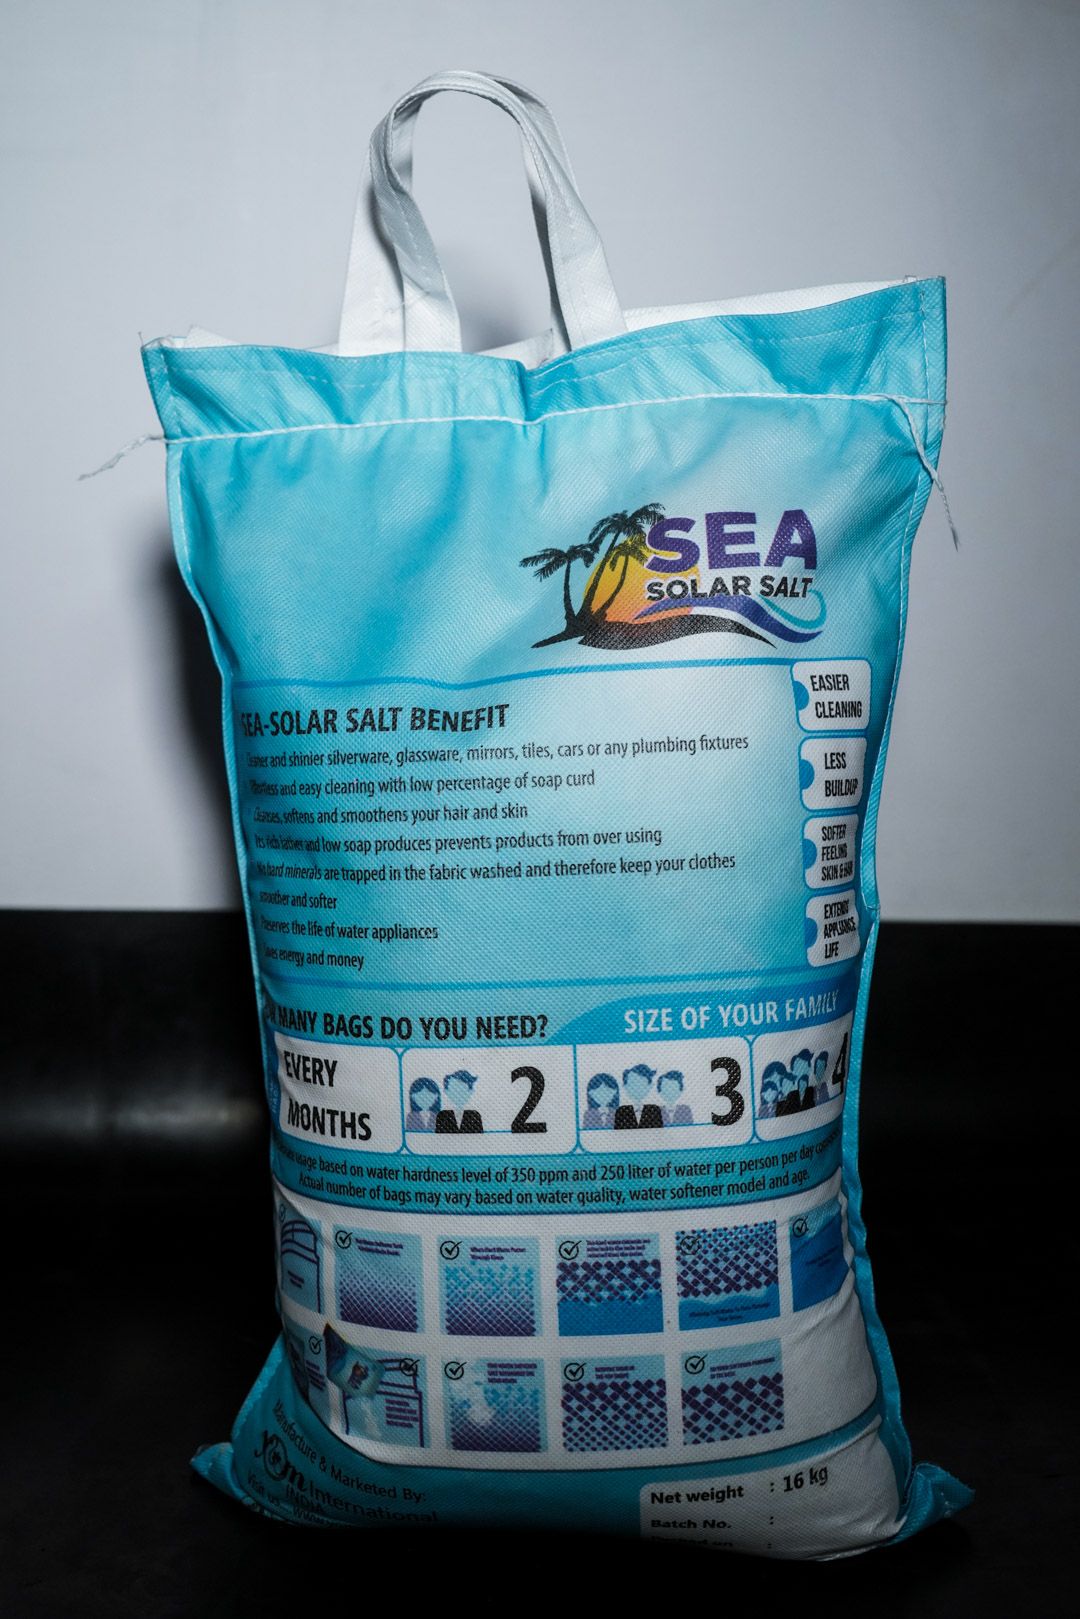 YOM YORO Sea Solar Salt For Softener - 16 Kg